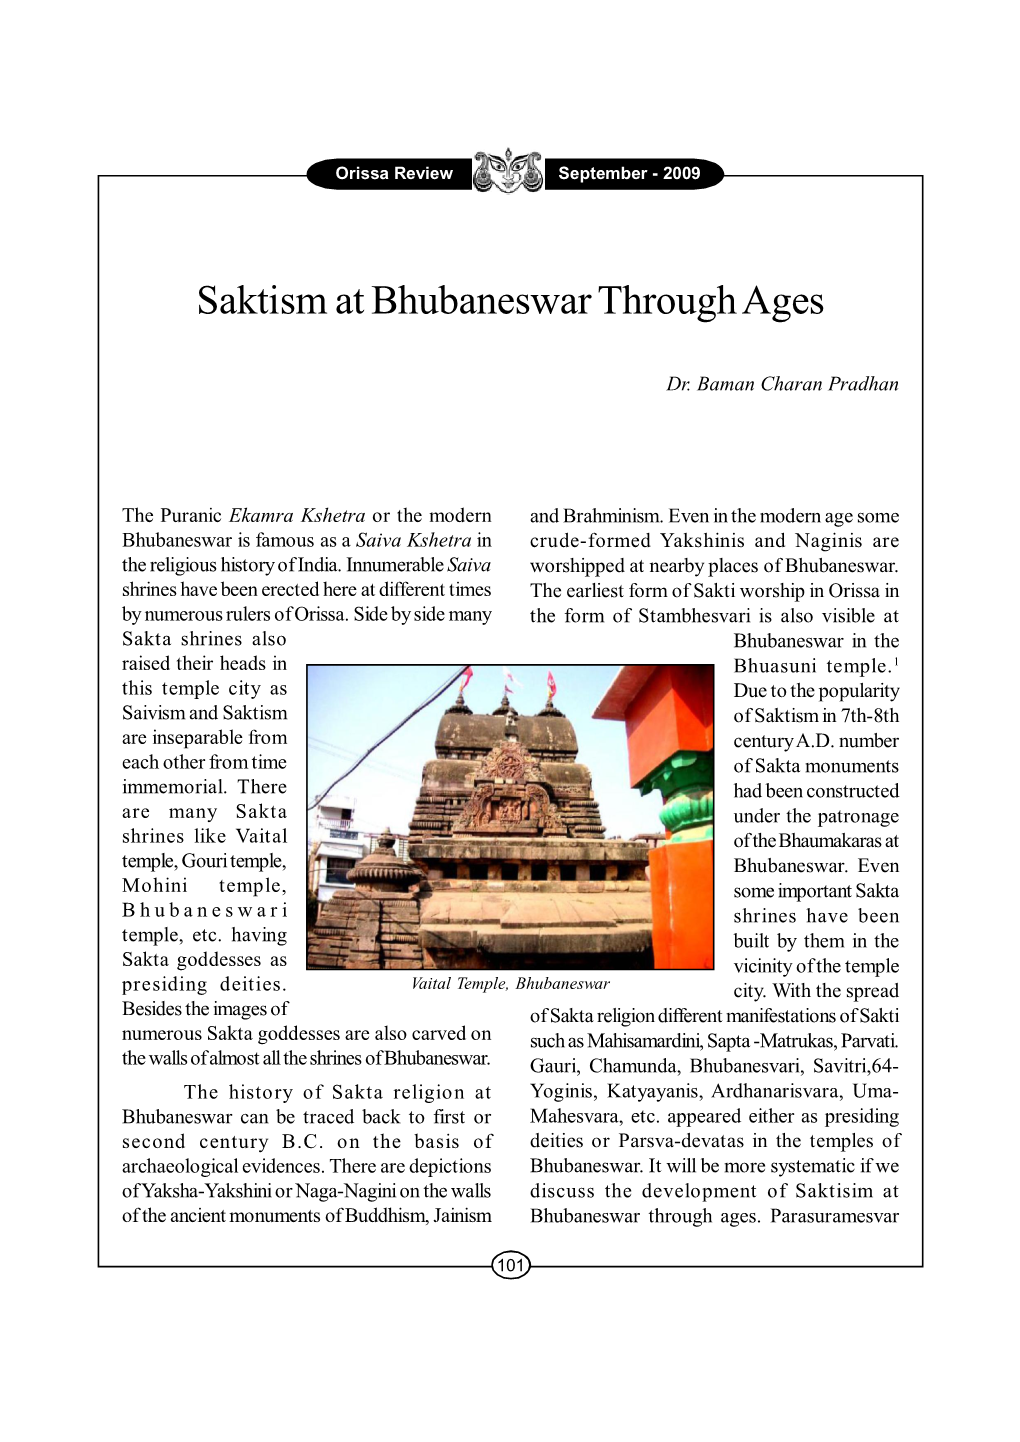 Saktism at Bhubaneswar Through Ages